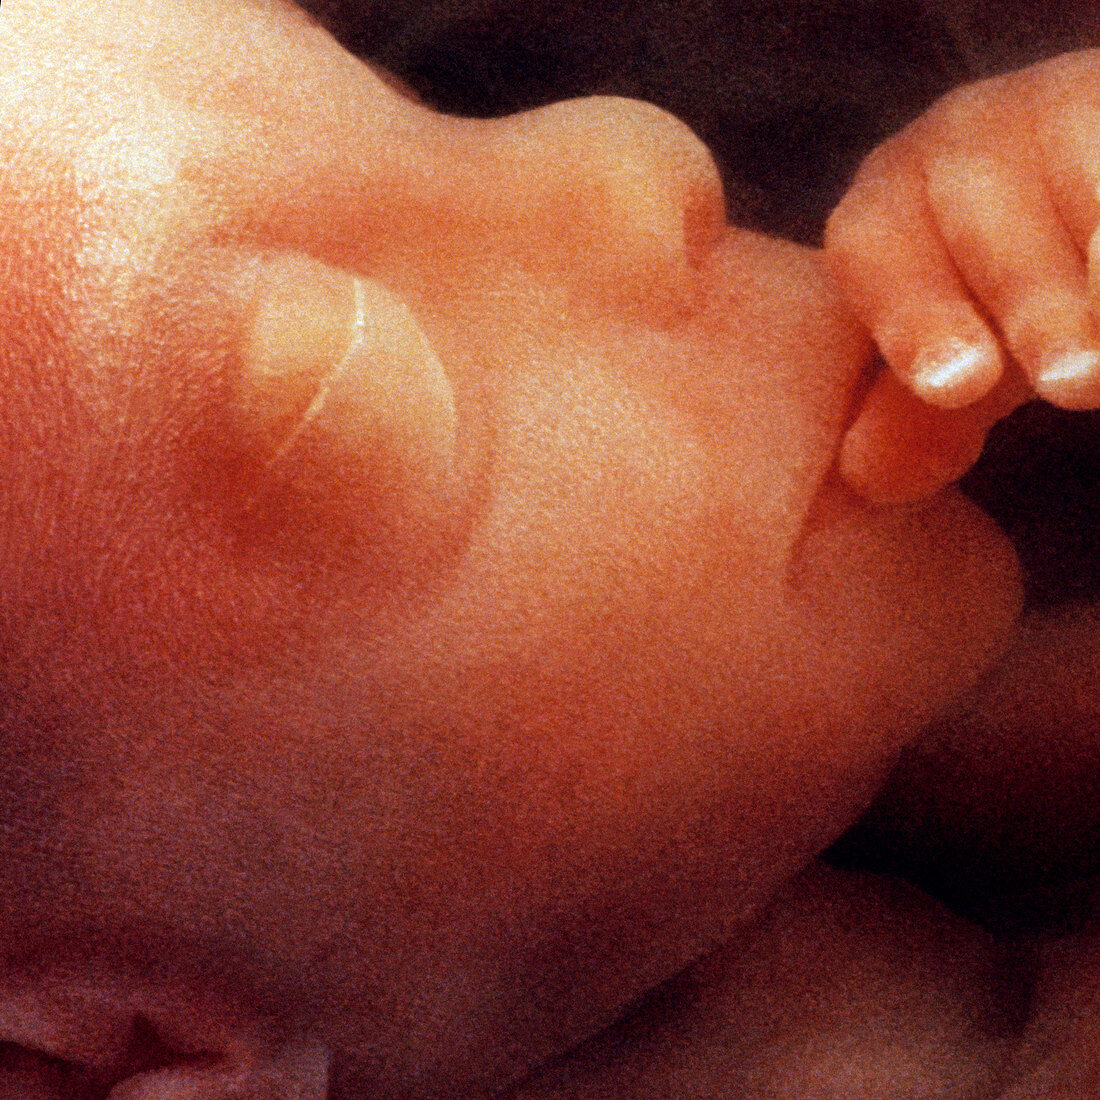 Foetus face aged 12 weeks